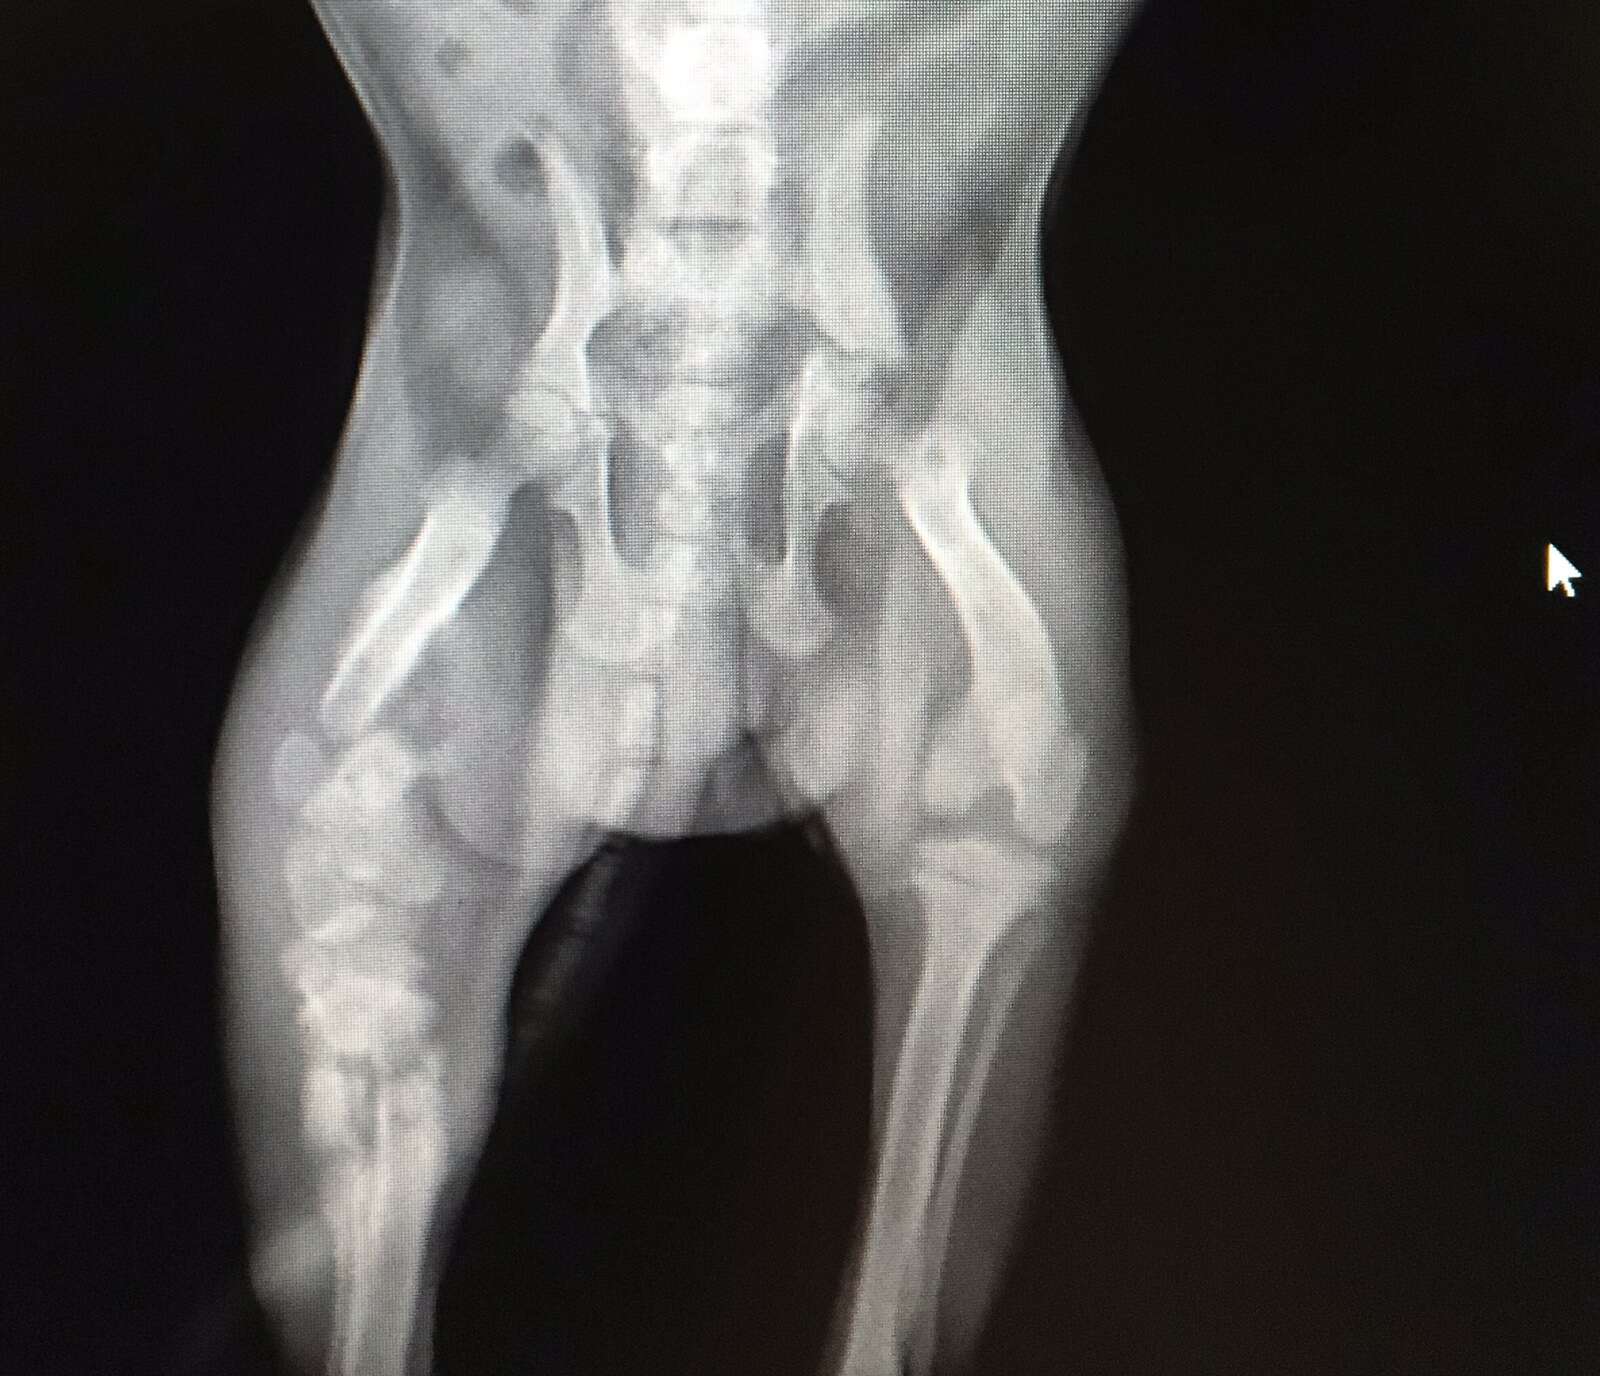 X-ray showing broken bones in pug